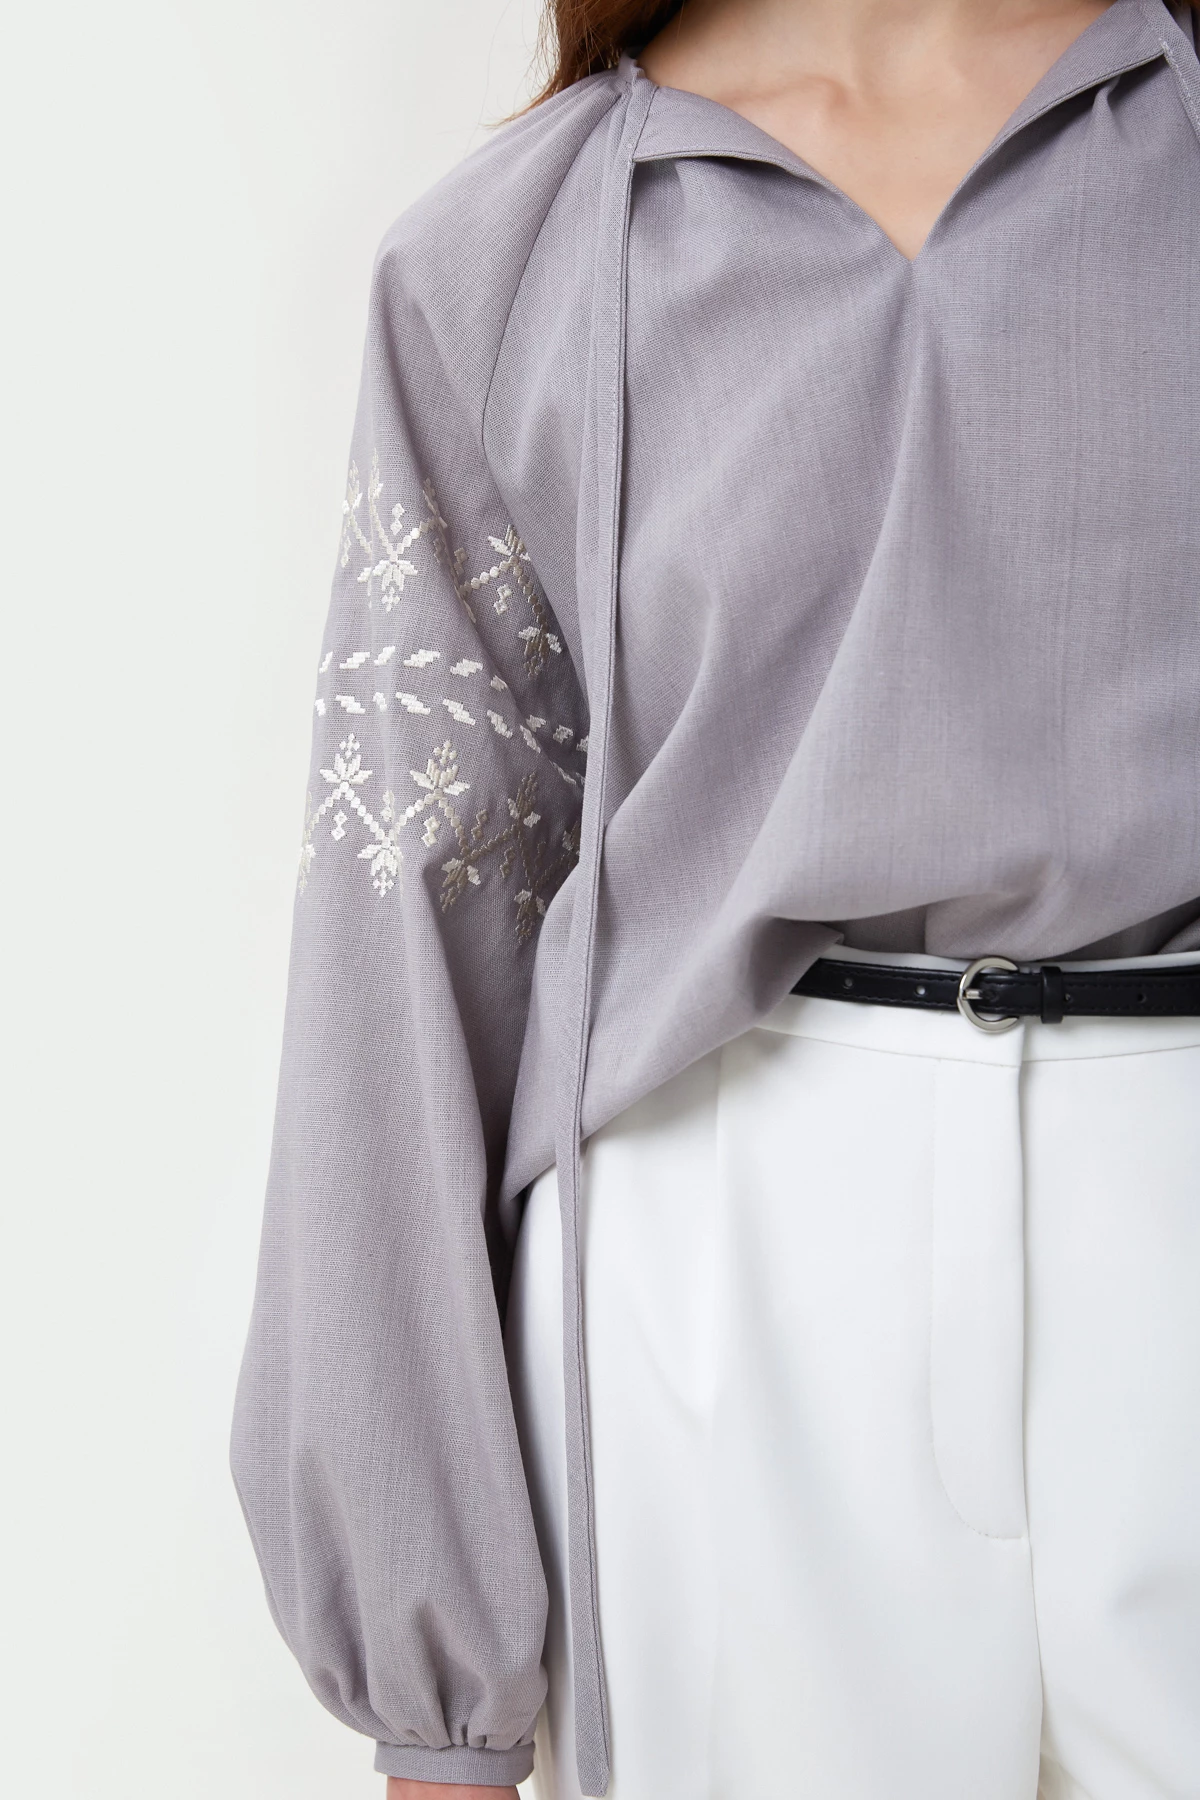 Сіра вишита сорочка в орнамент зигзаги з льоном, фото 4